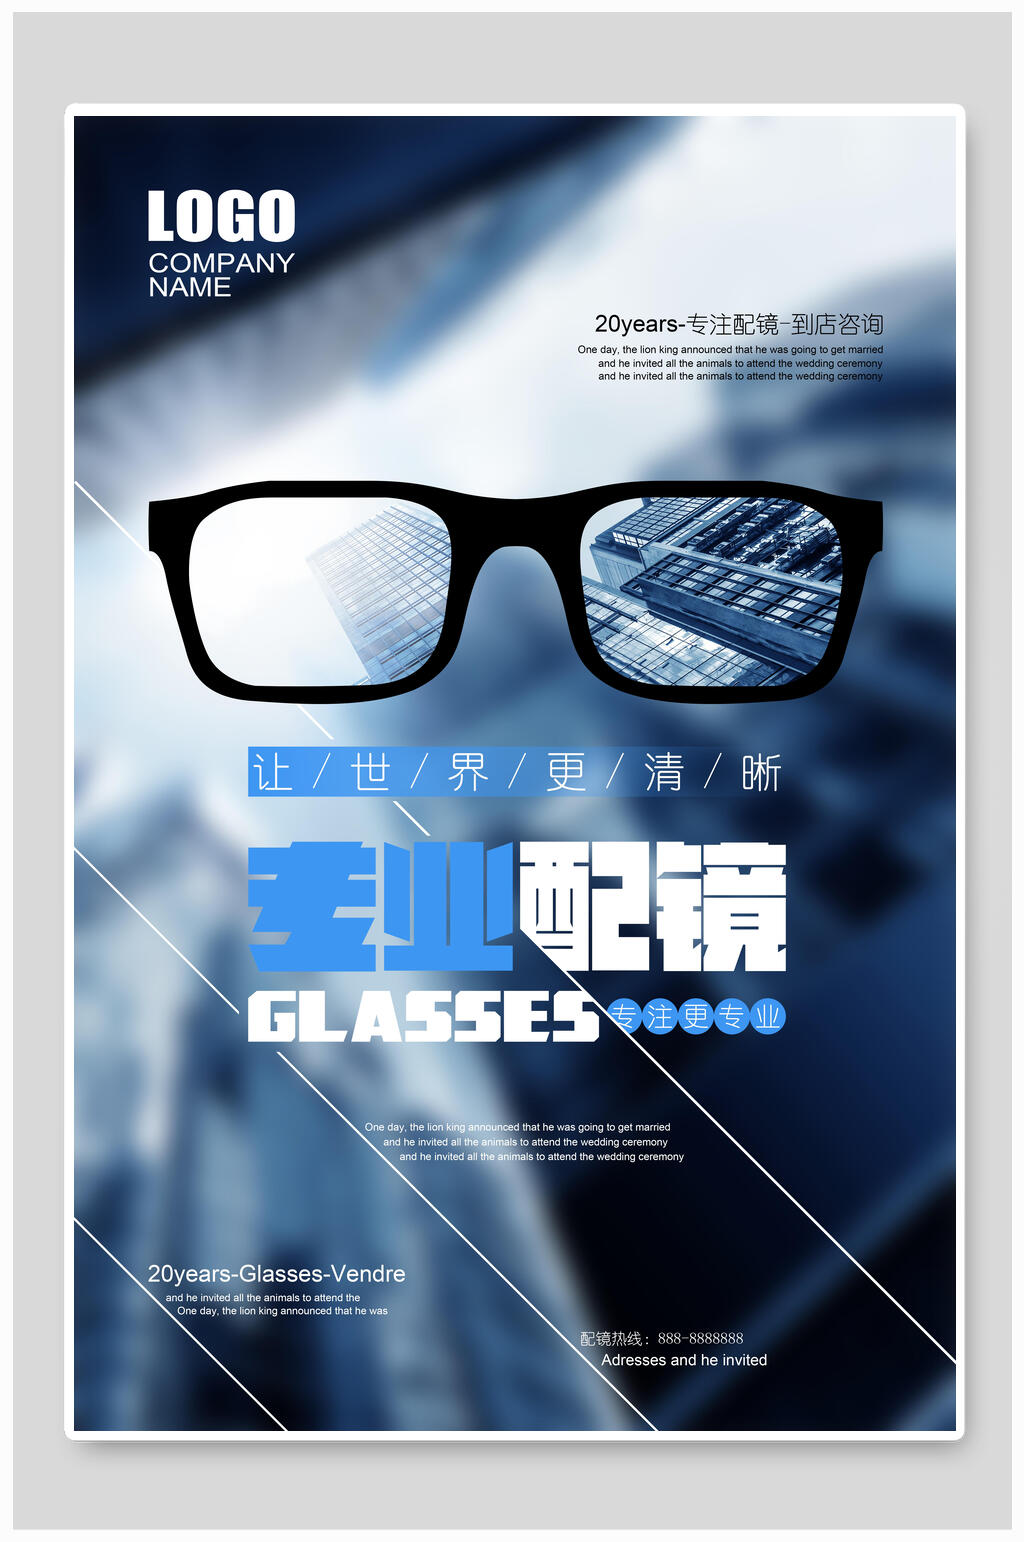 配镜眼镜店海报素材免费下载,本作品是由月月上传的原创平面广告素材